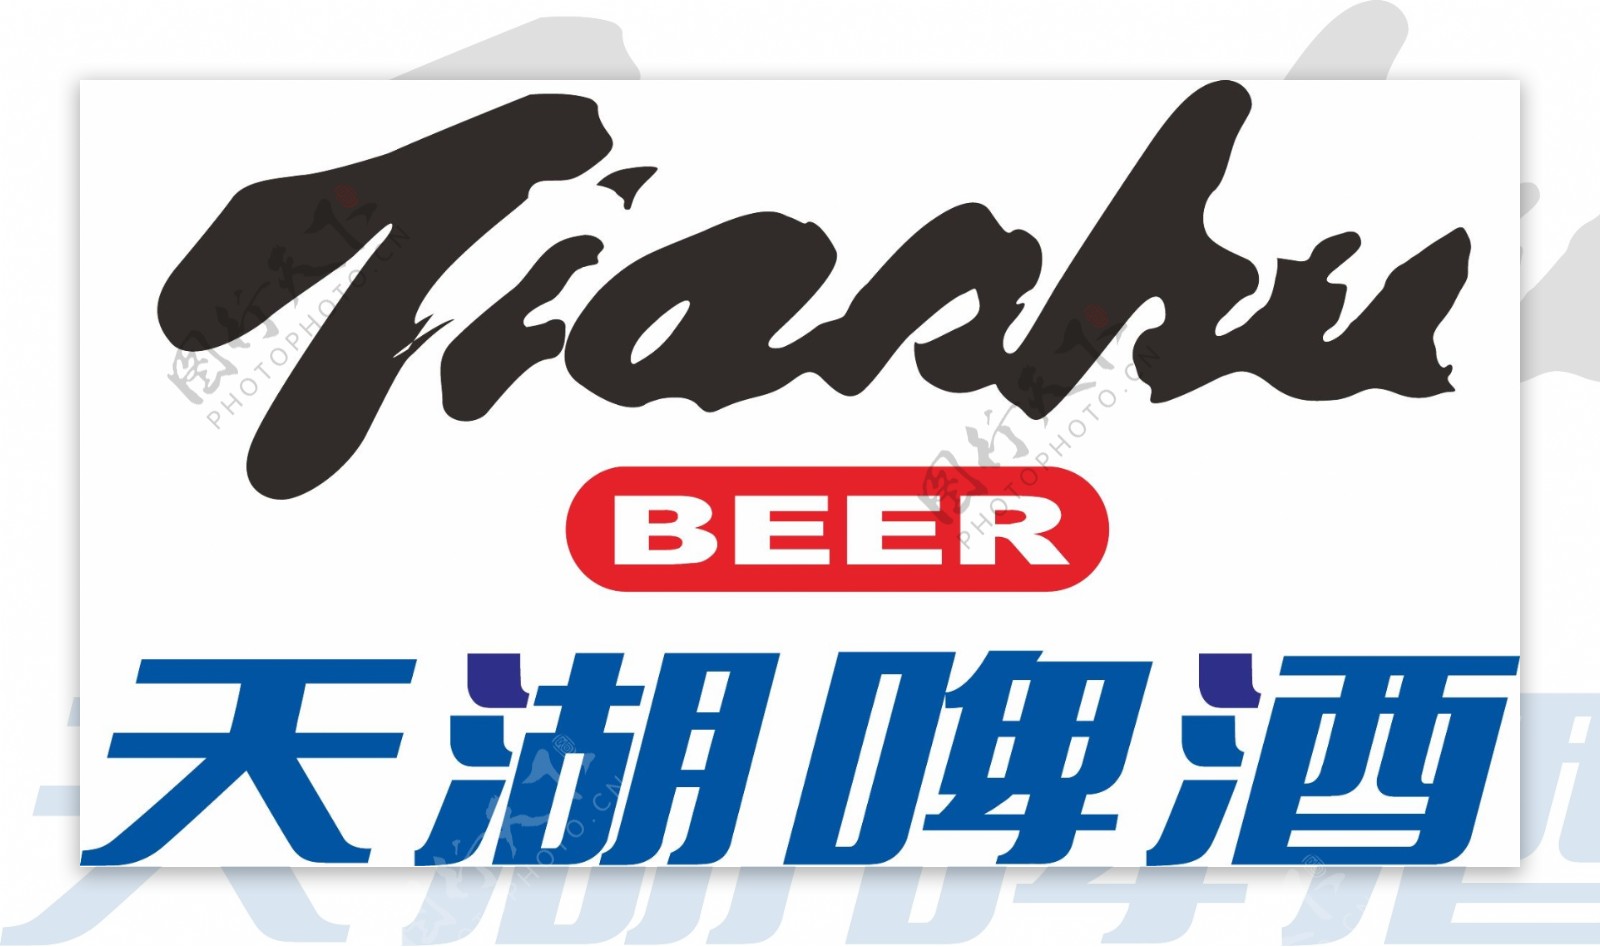 天湖啤酒标志